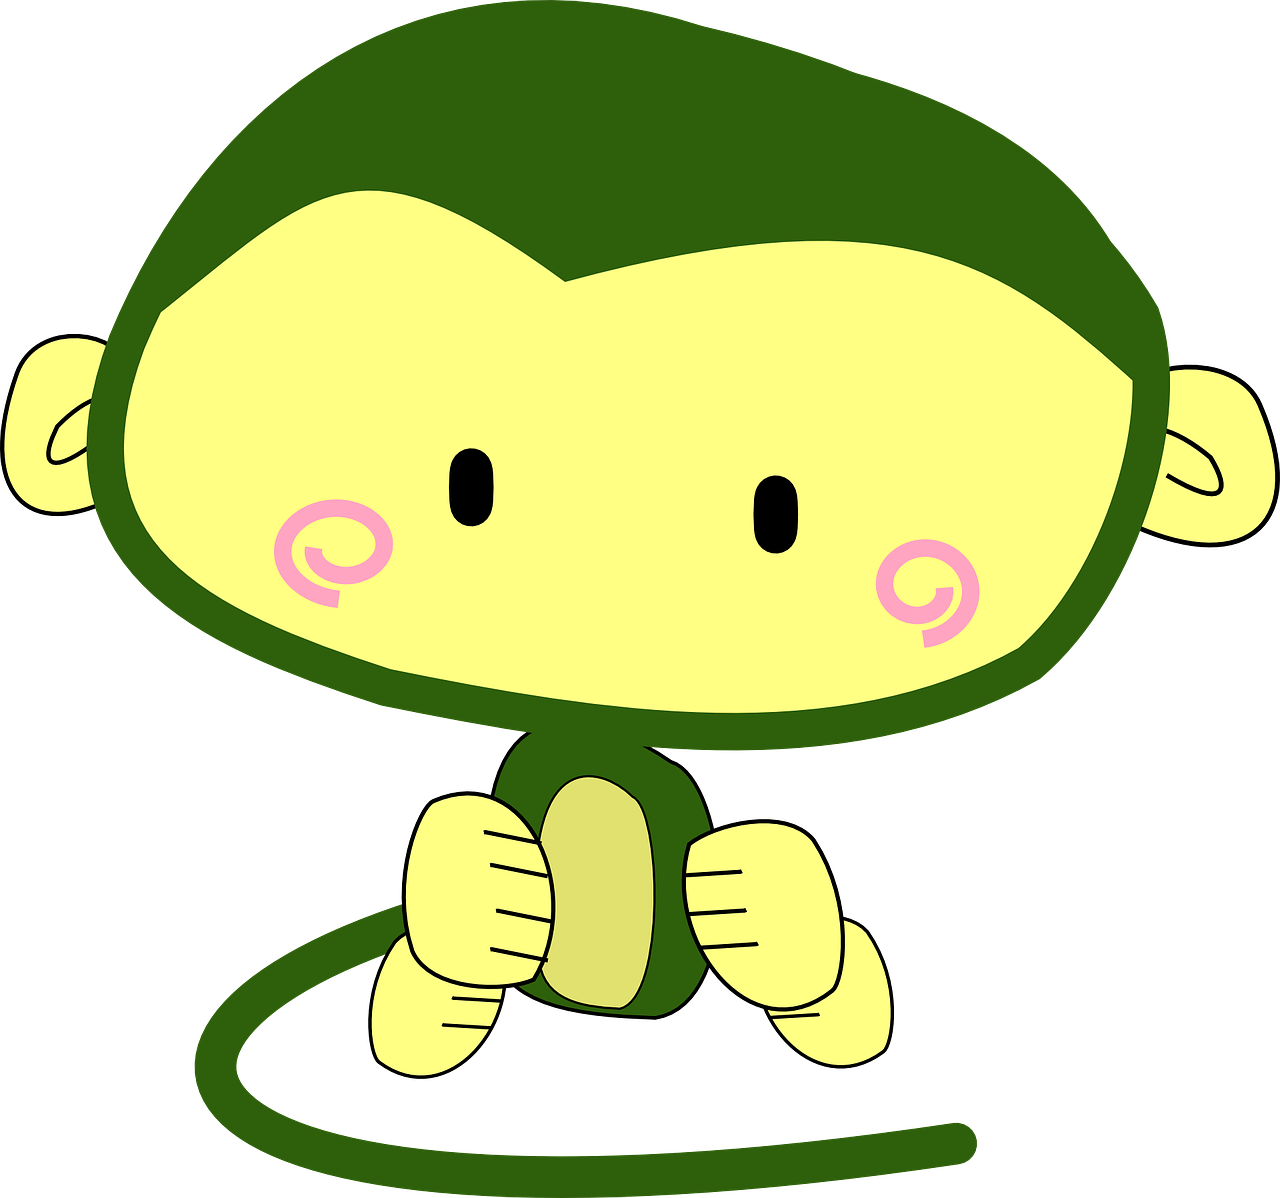 monkey cartoon character free photo